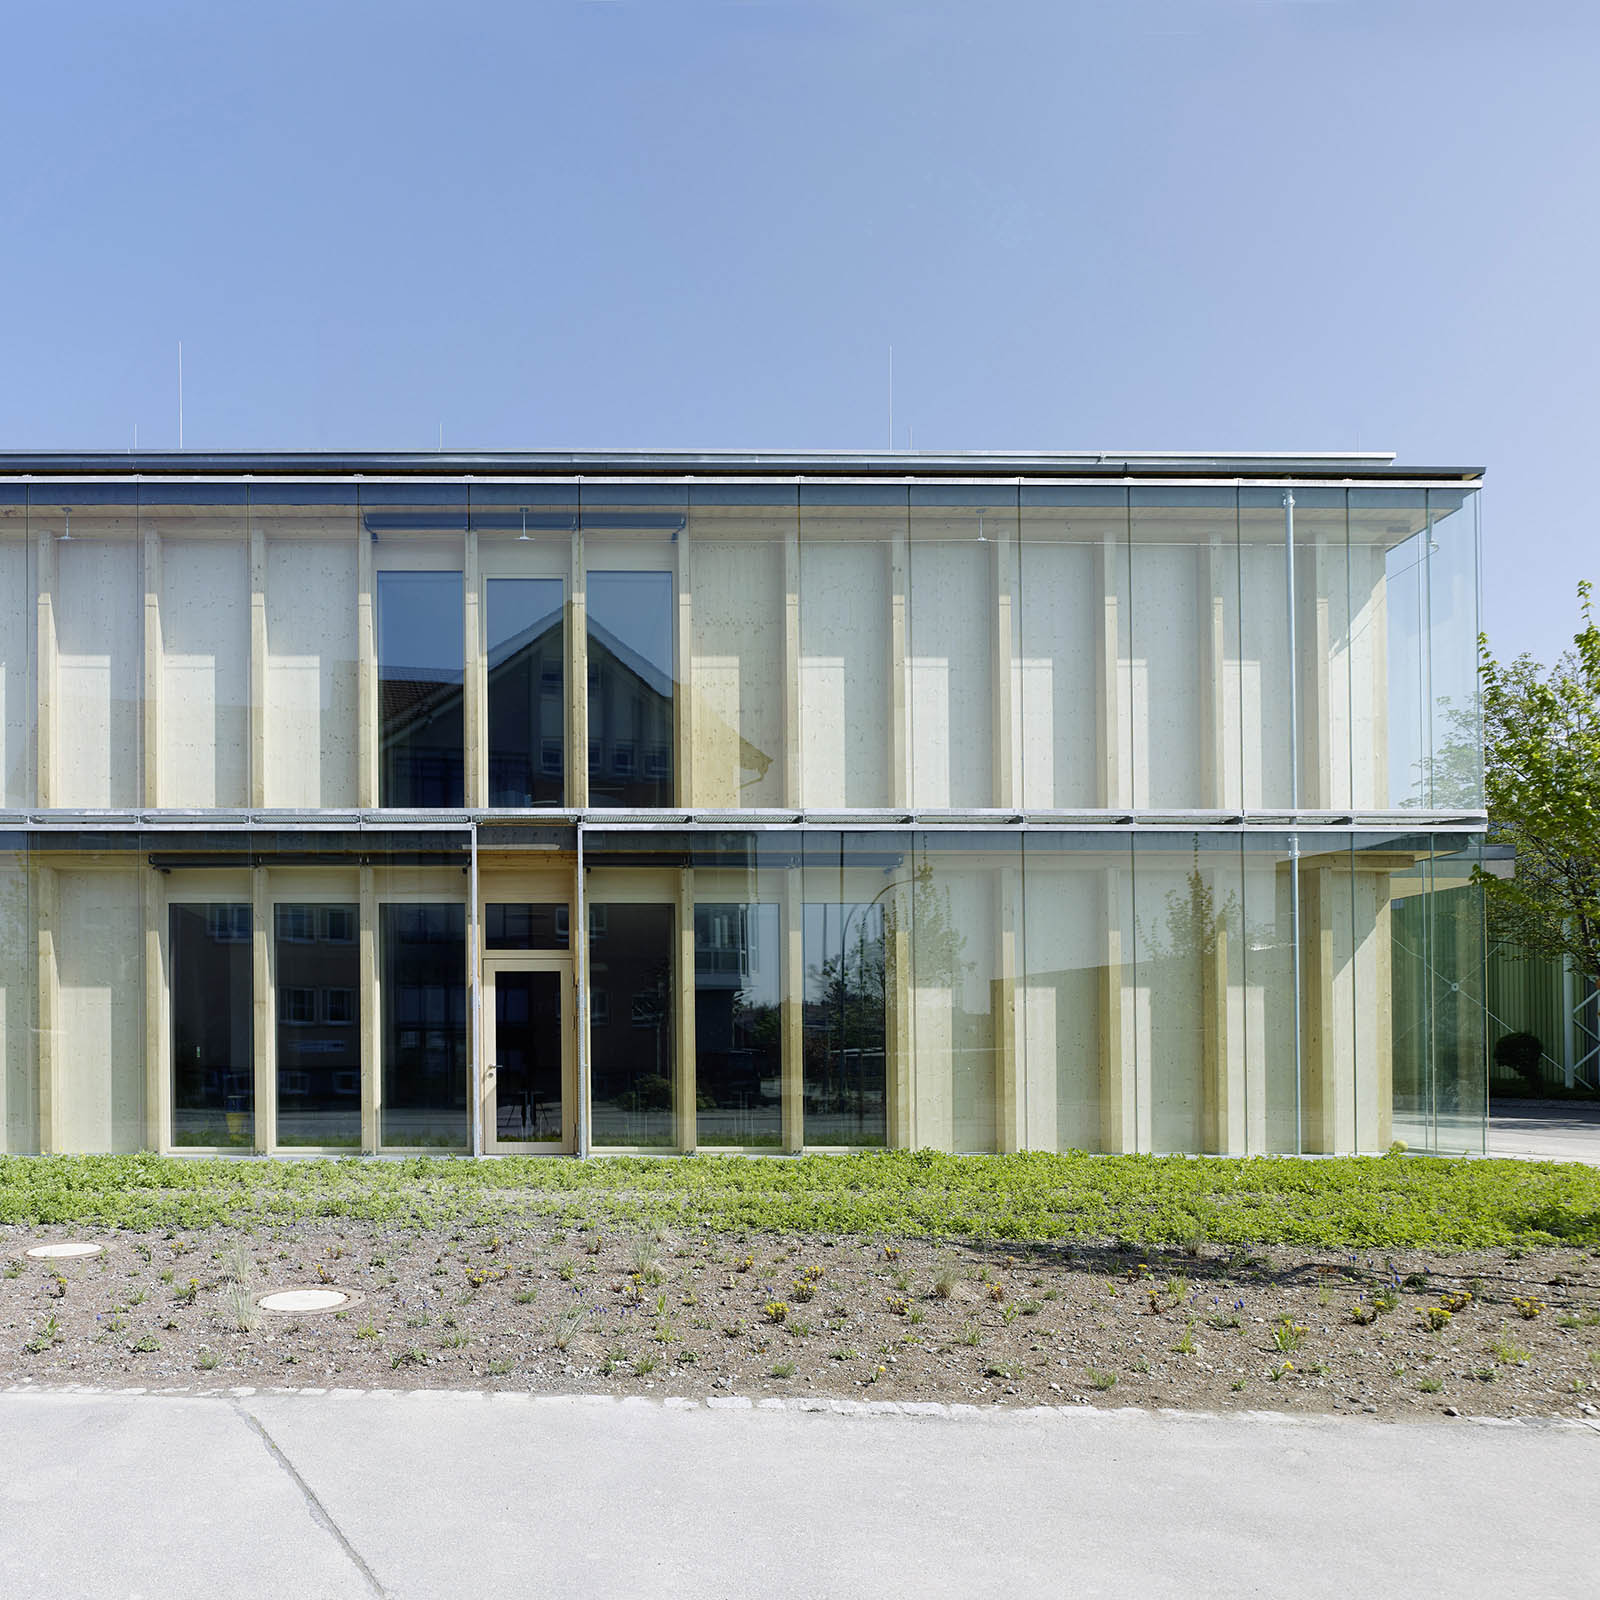 Ratoldus Gemeinschaftsschule von Dury + d'Aloisio Architekten BDA aufgenommen in Radolfzell 2019 Bild 1